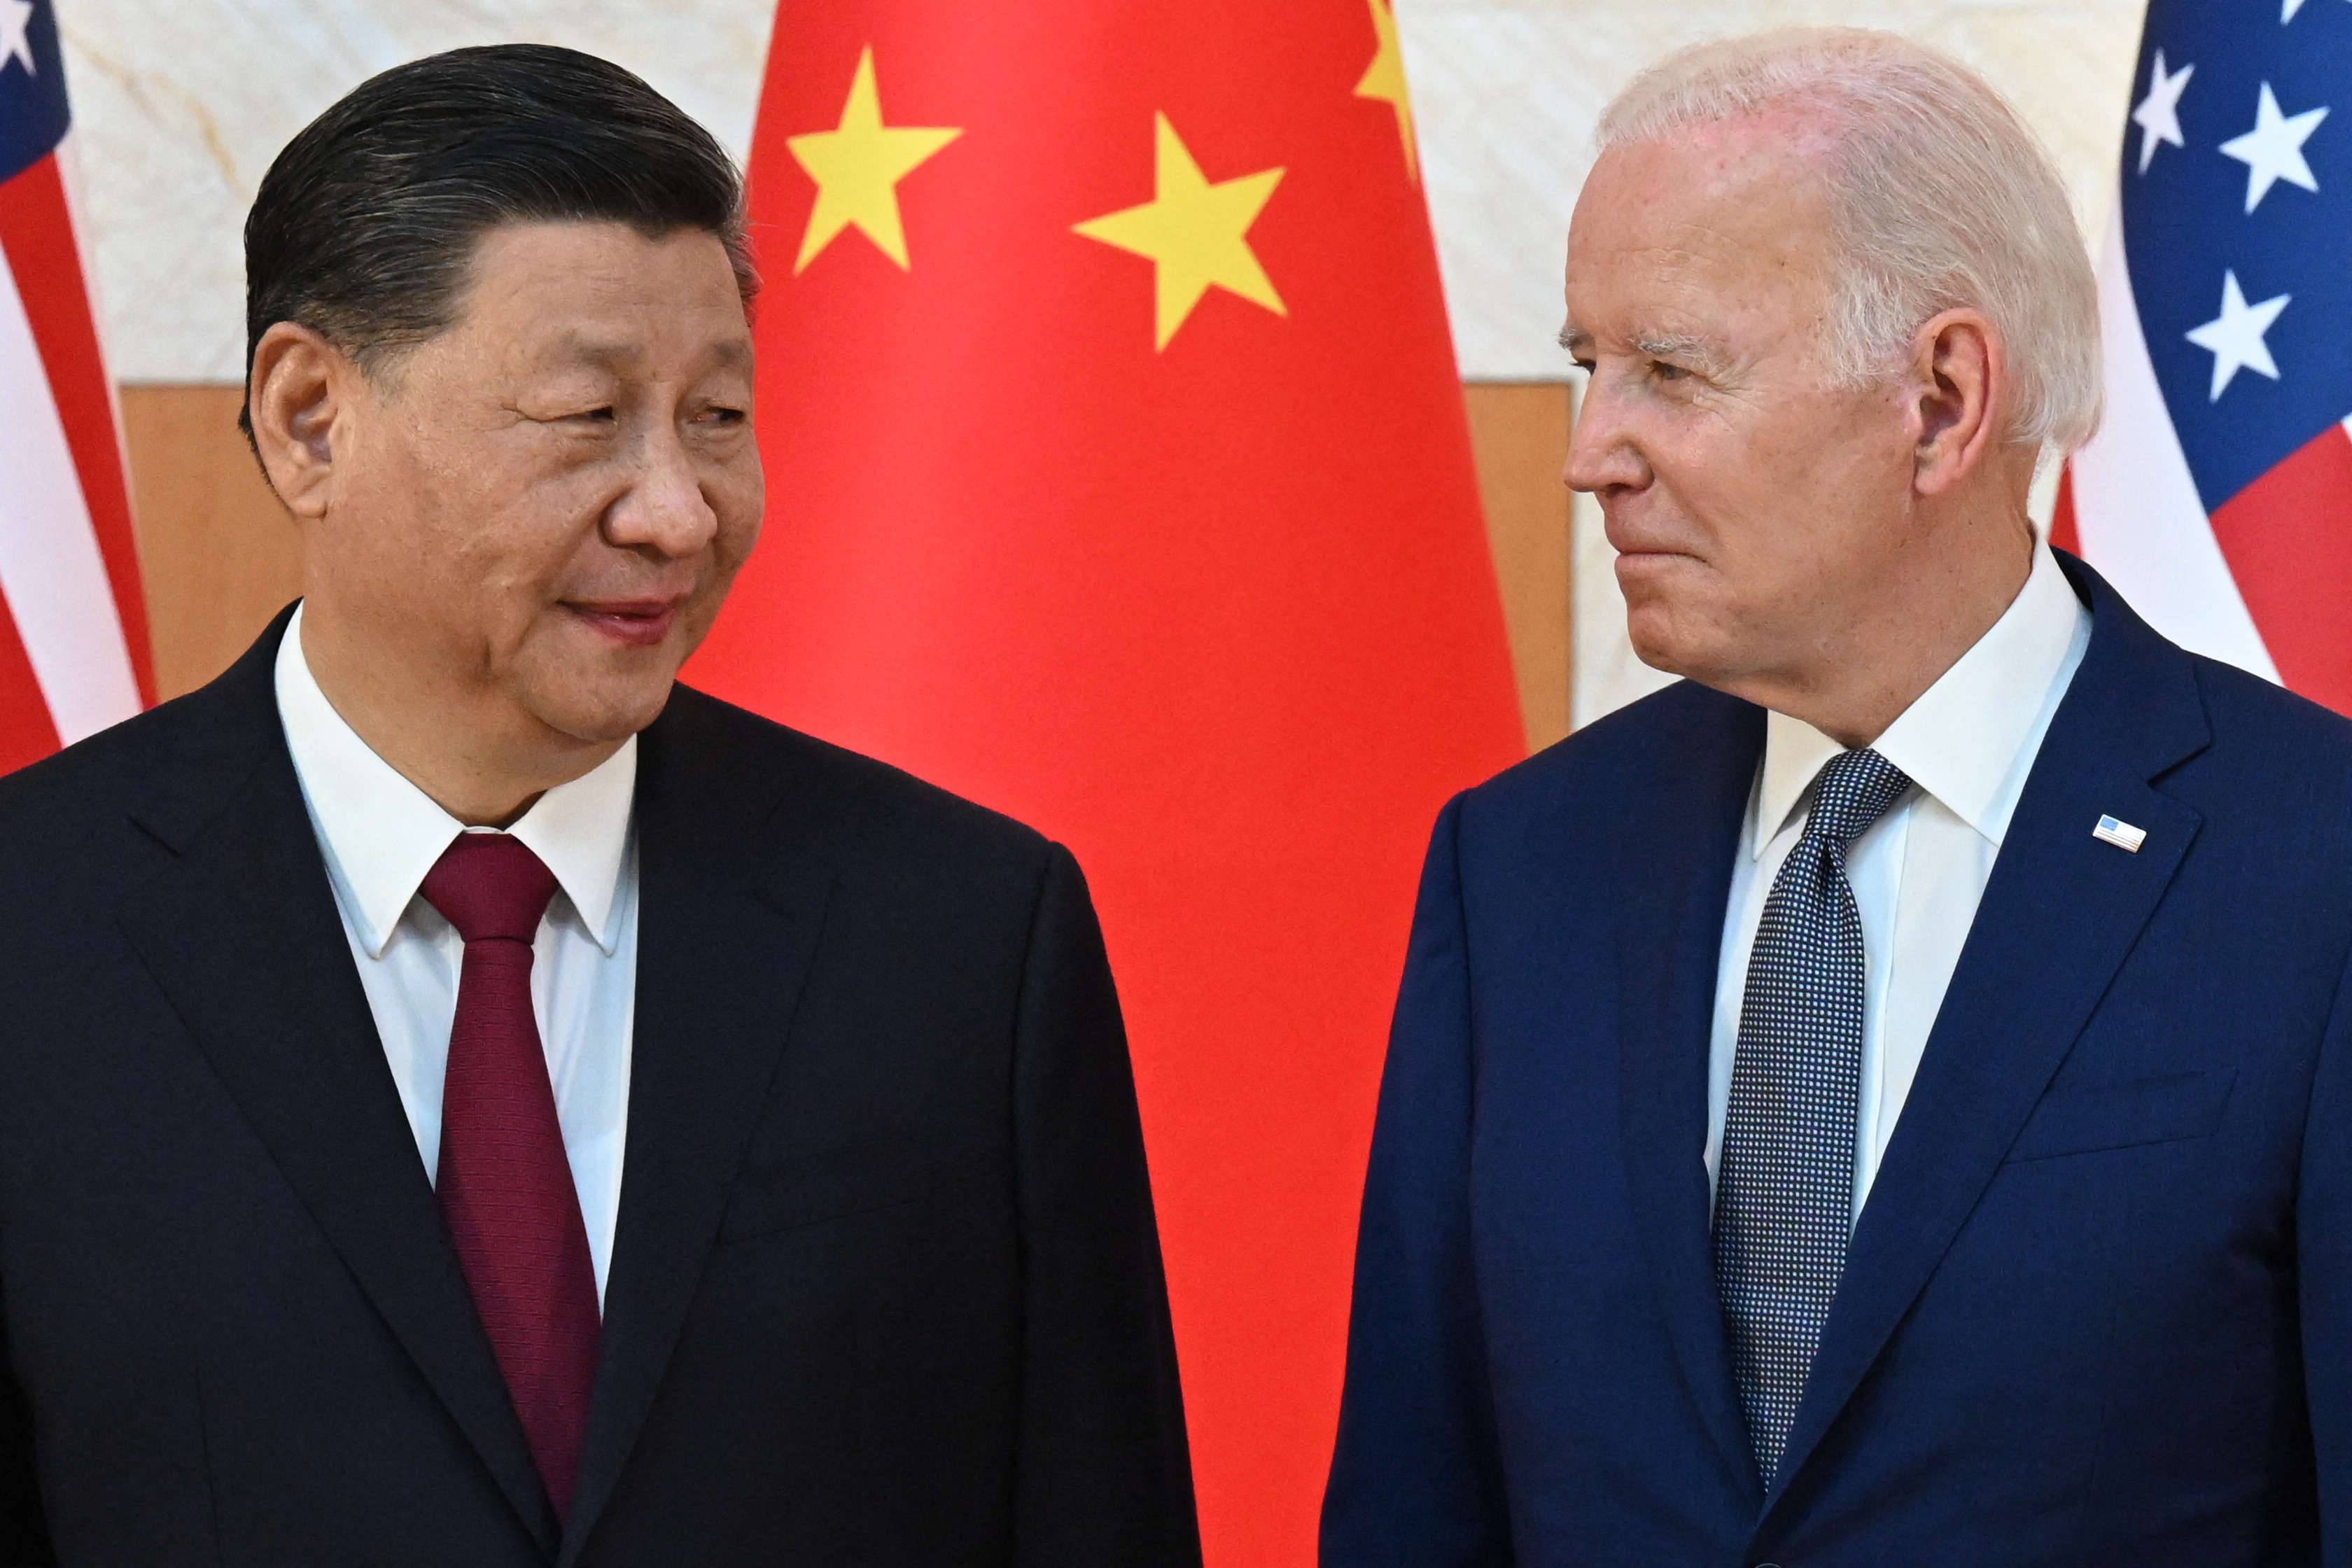 chess prince narrow Prima întrevedere față în față, Joe Biden și Xi Jinping. Cei doi lideri au  dat mâna, pe fondul tensiunilor din Taiwan - Stirileprotv.ro